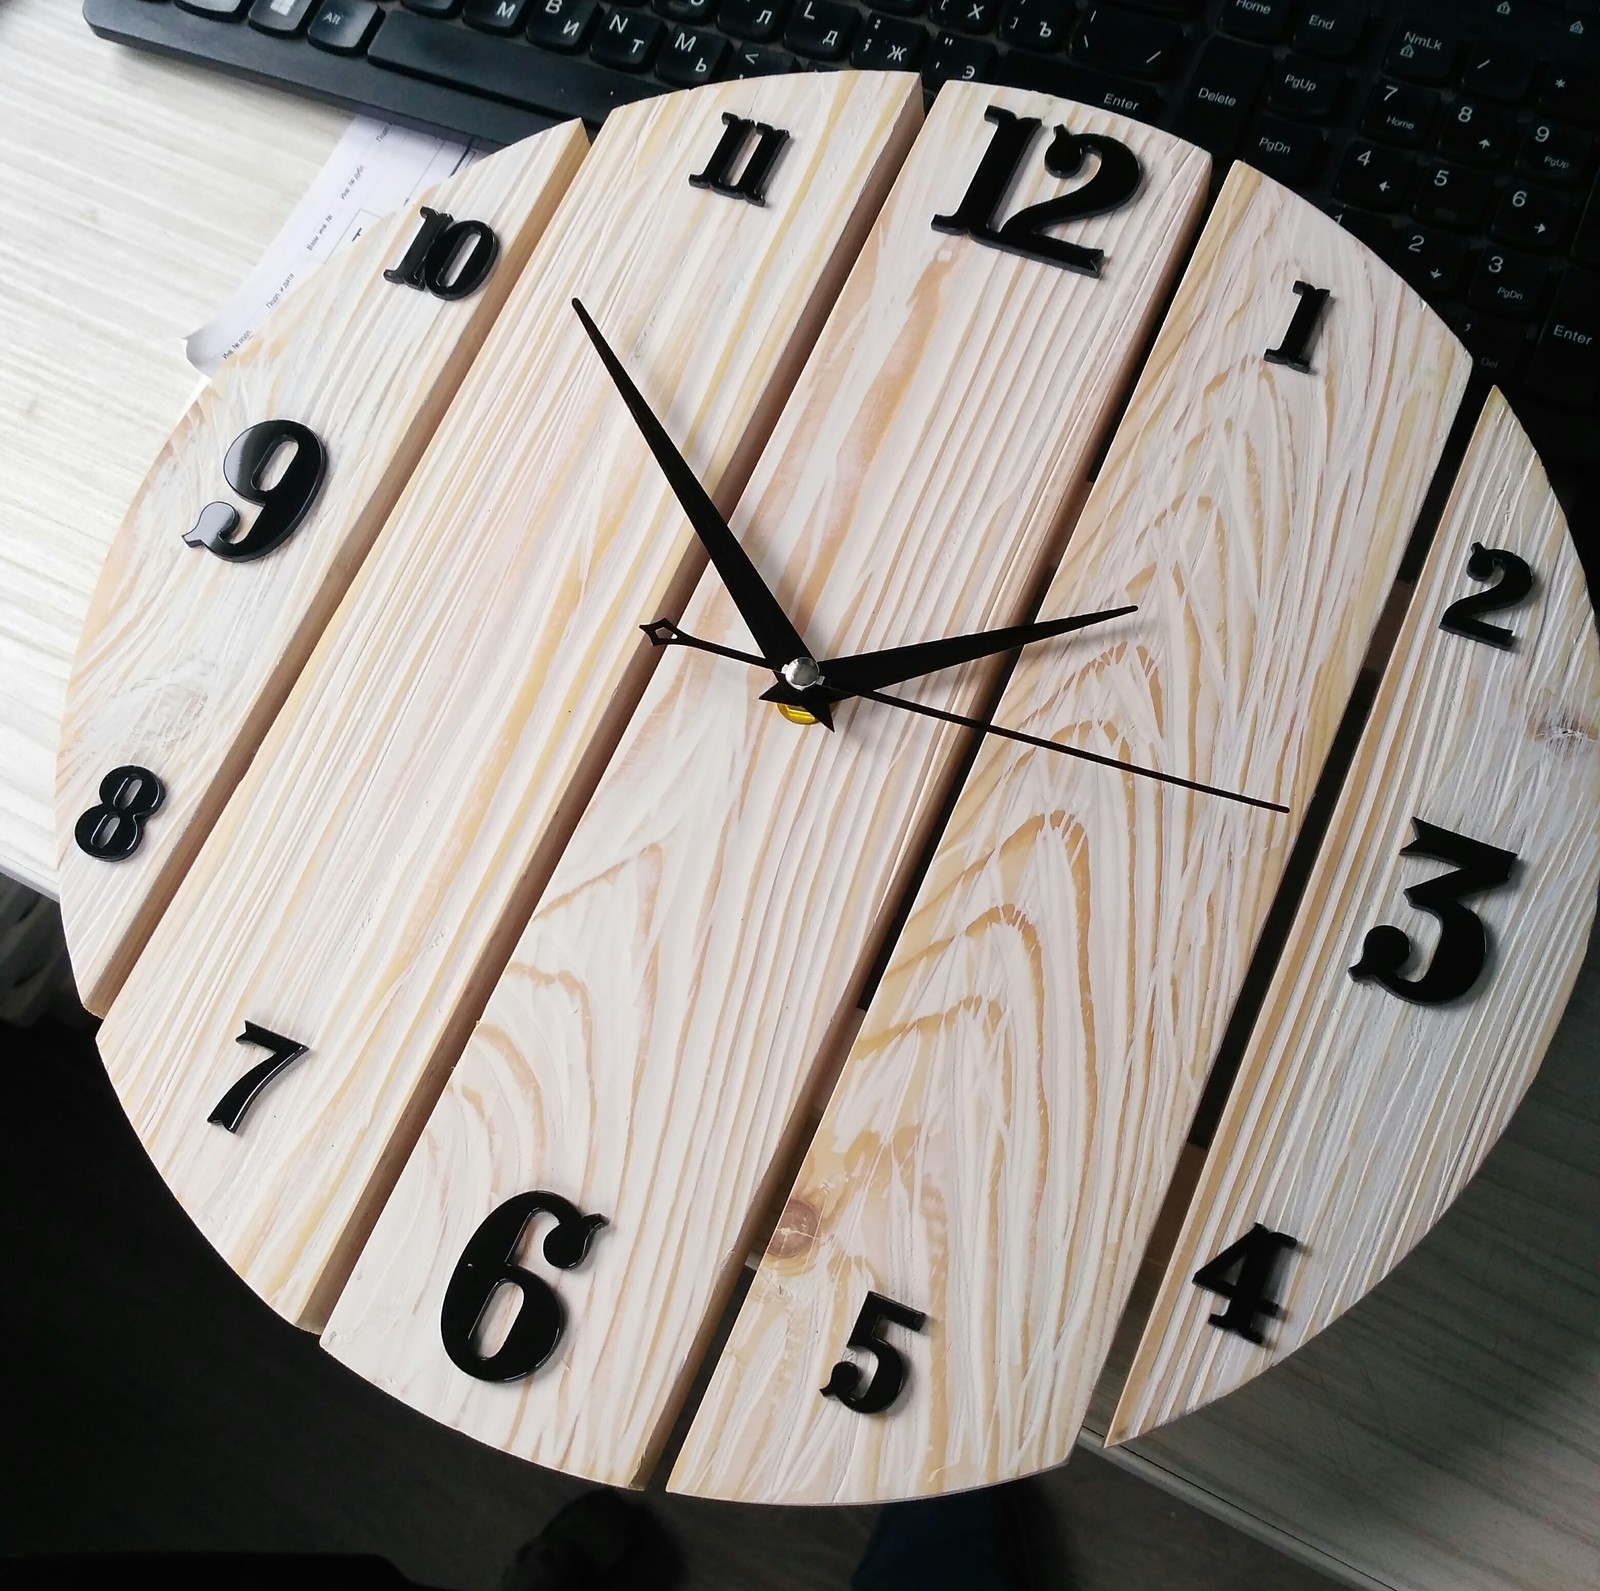 Часы делает сами. Часы из дерева. Часы своими руками. Часы настенные. Креативные настенные часы из дерева.